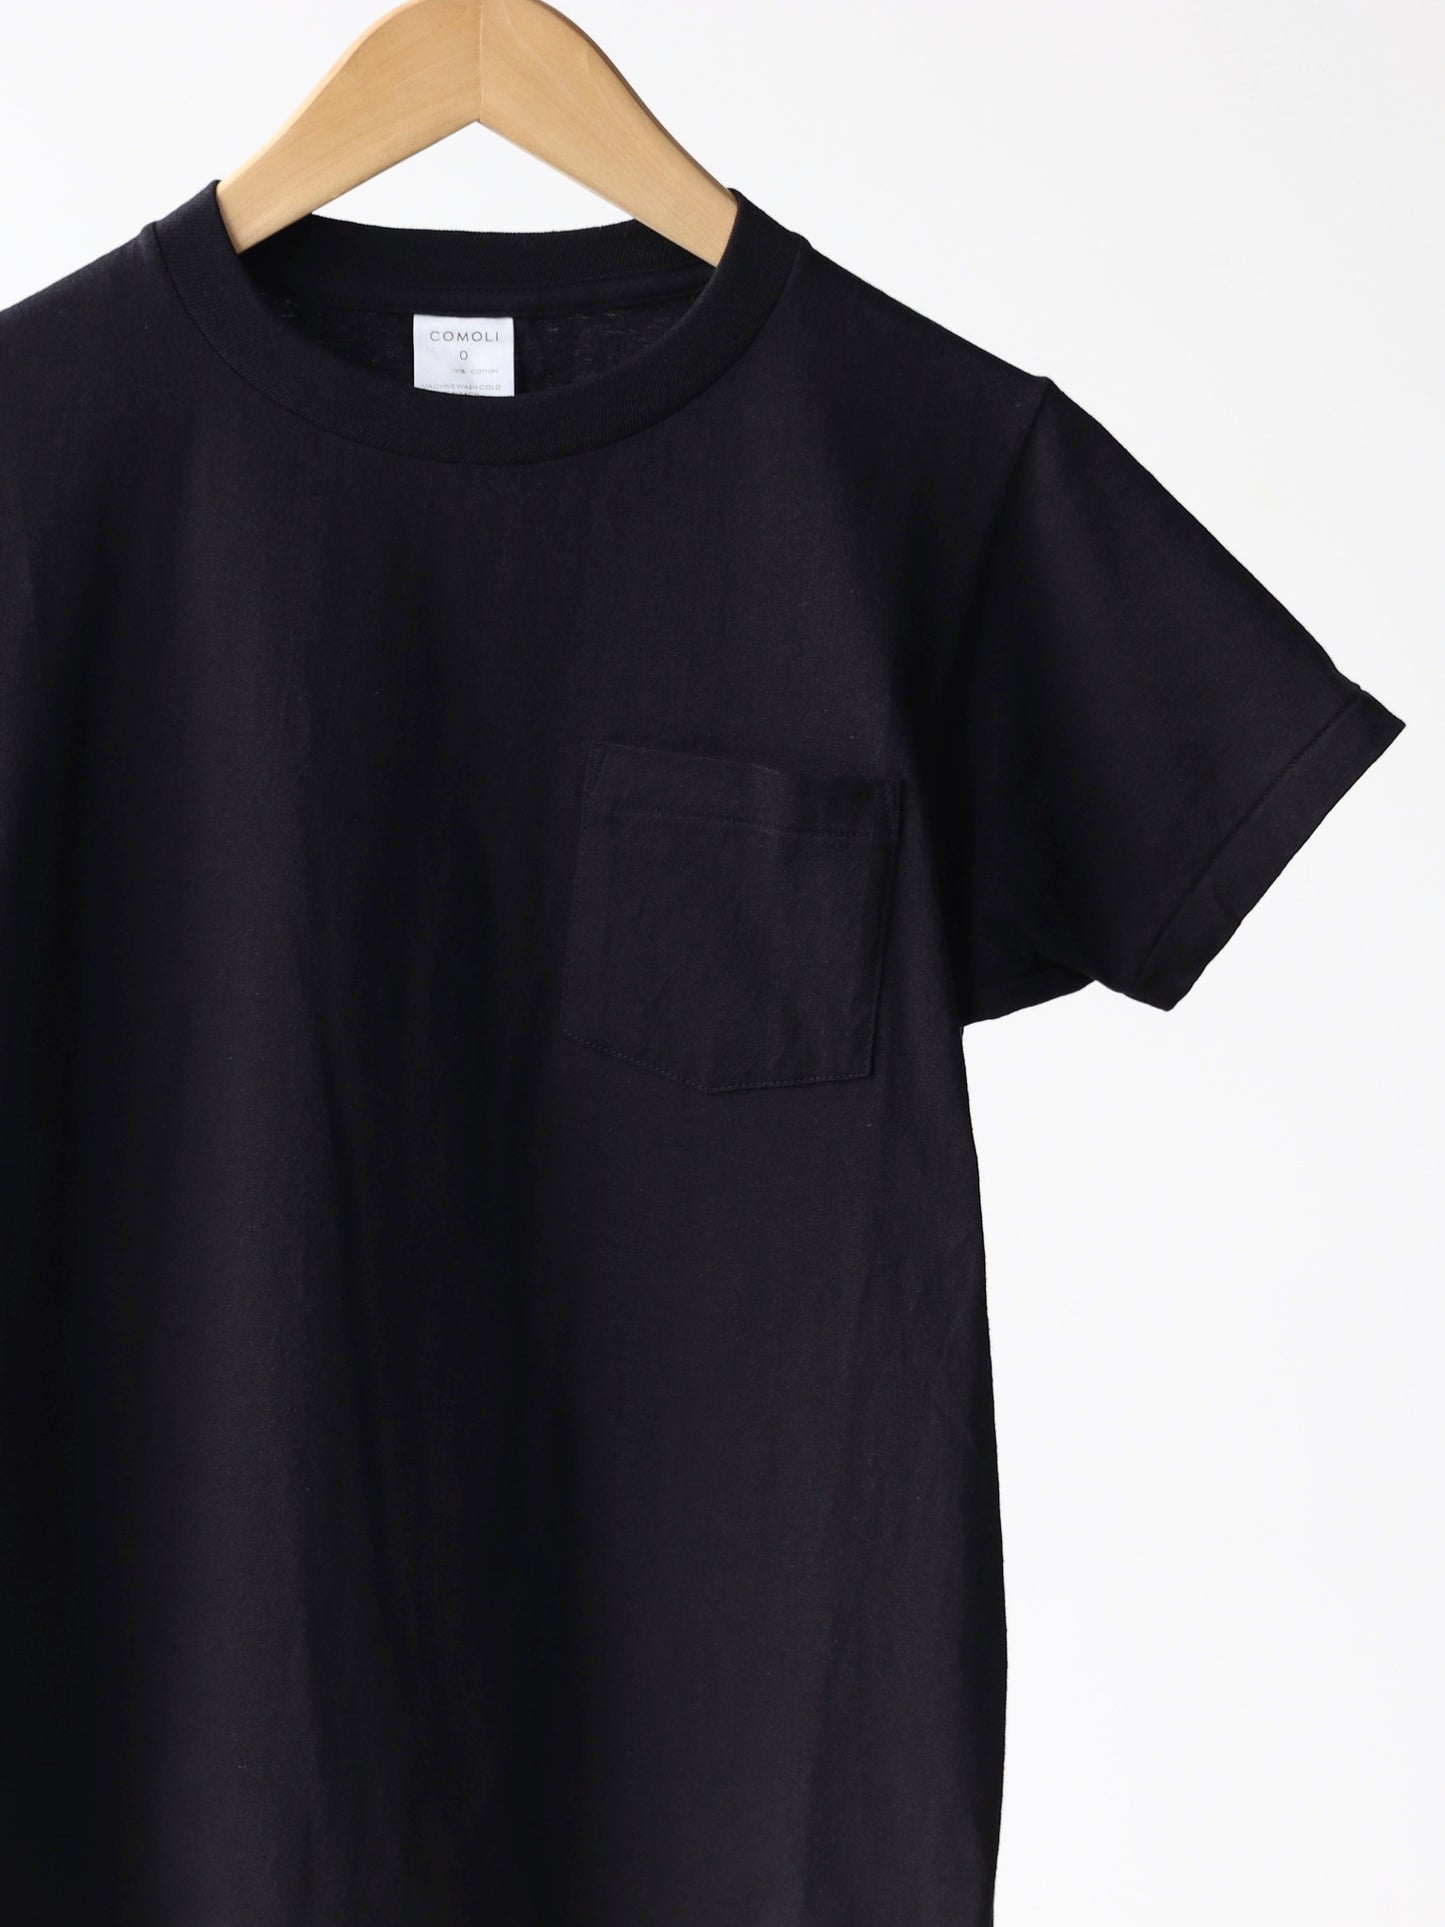 comoli-サープラス-tシャツ-black-2